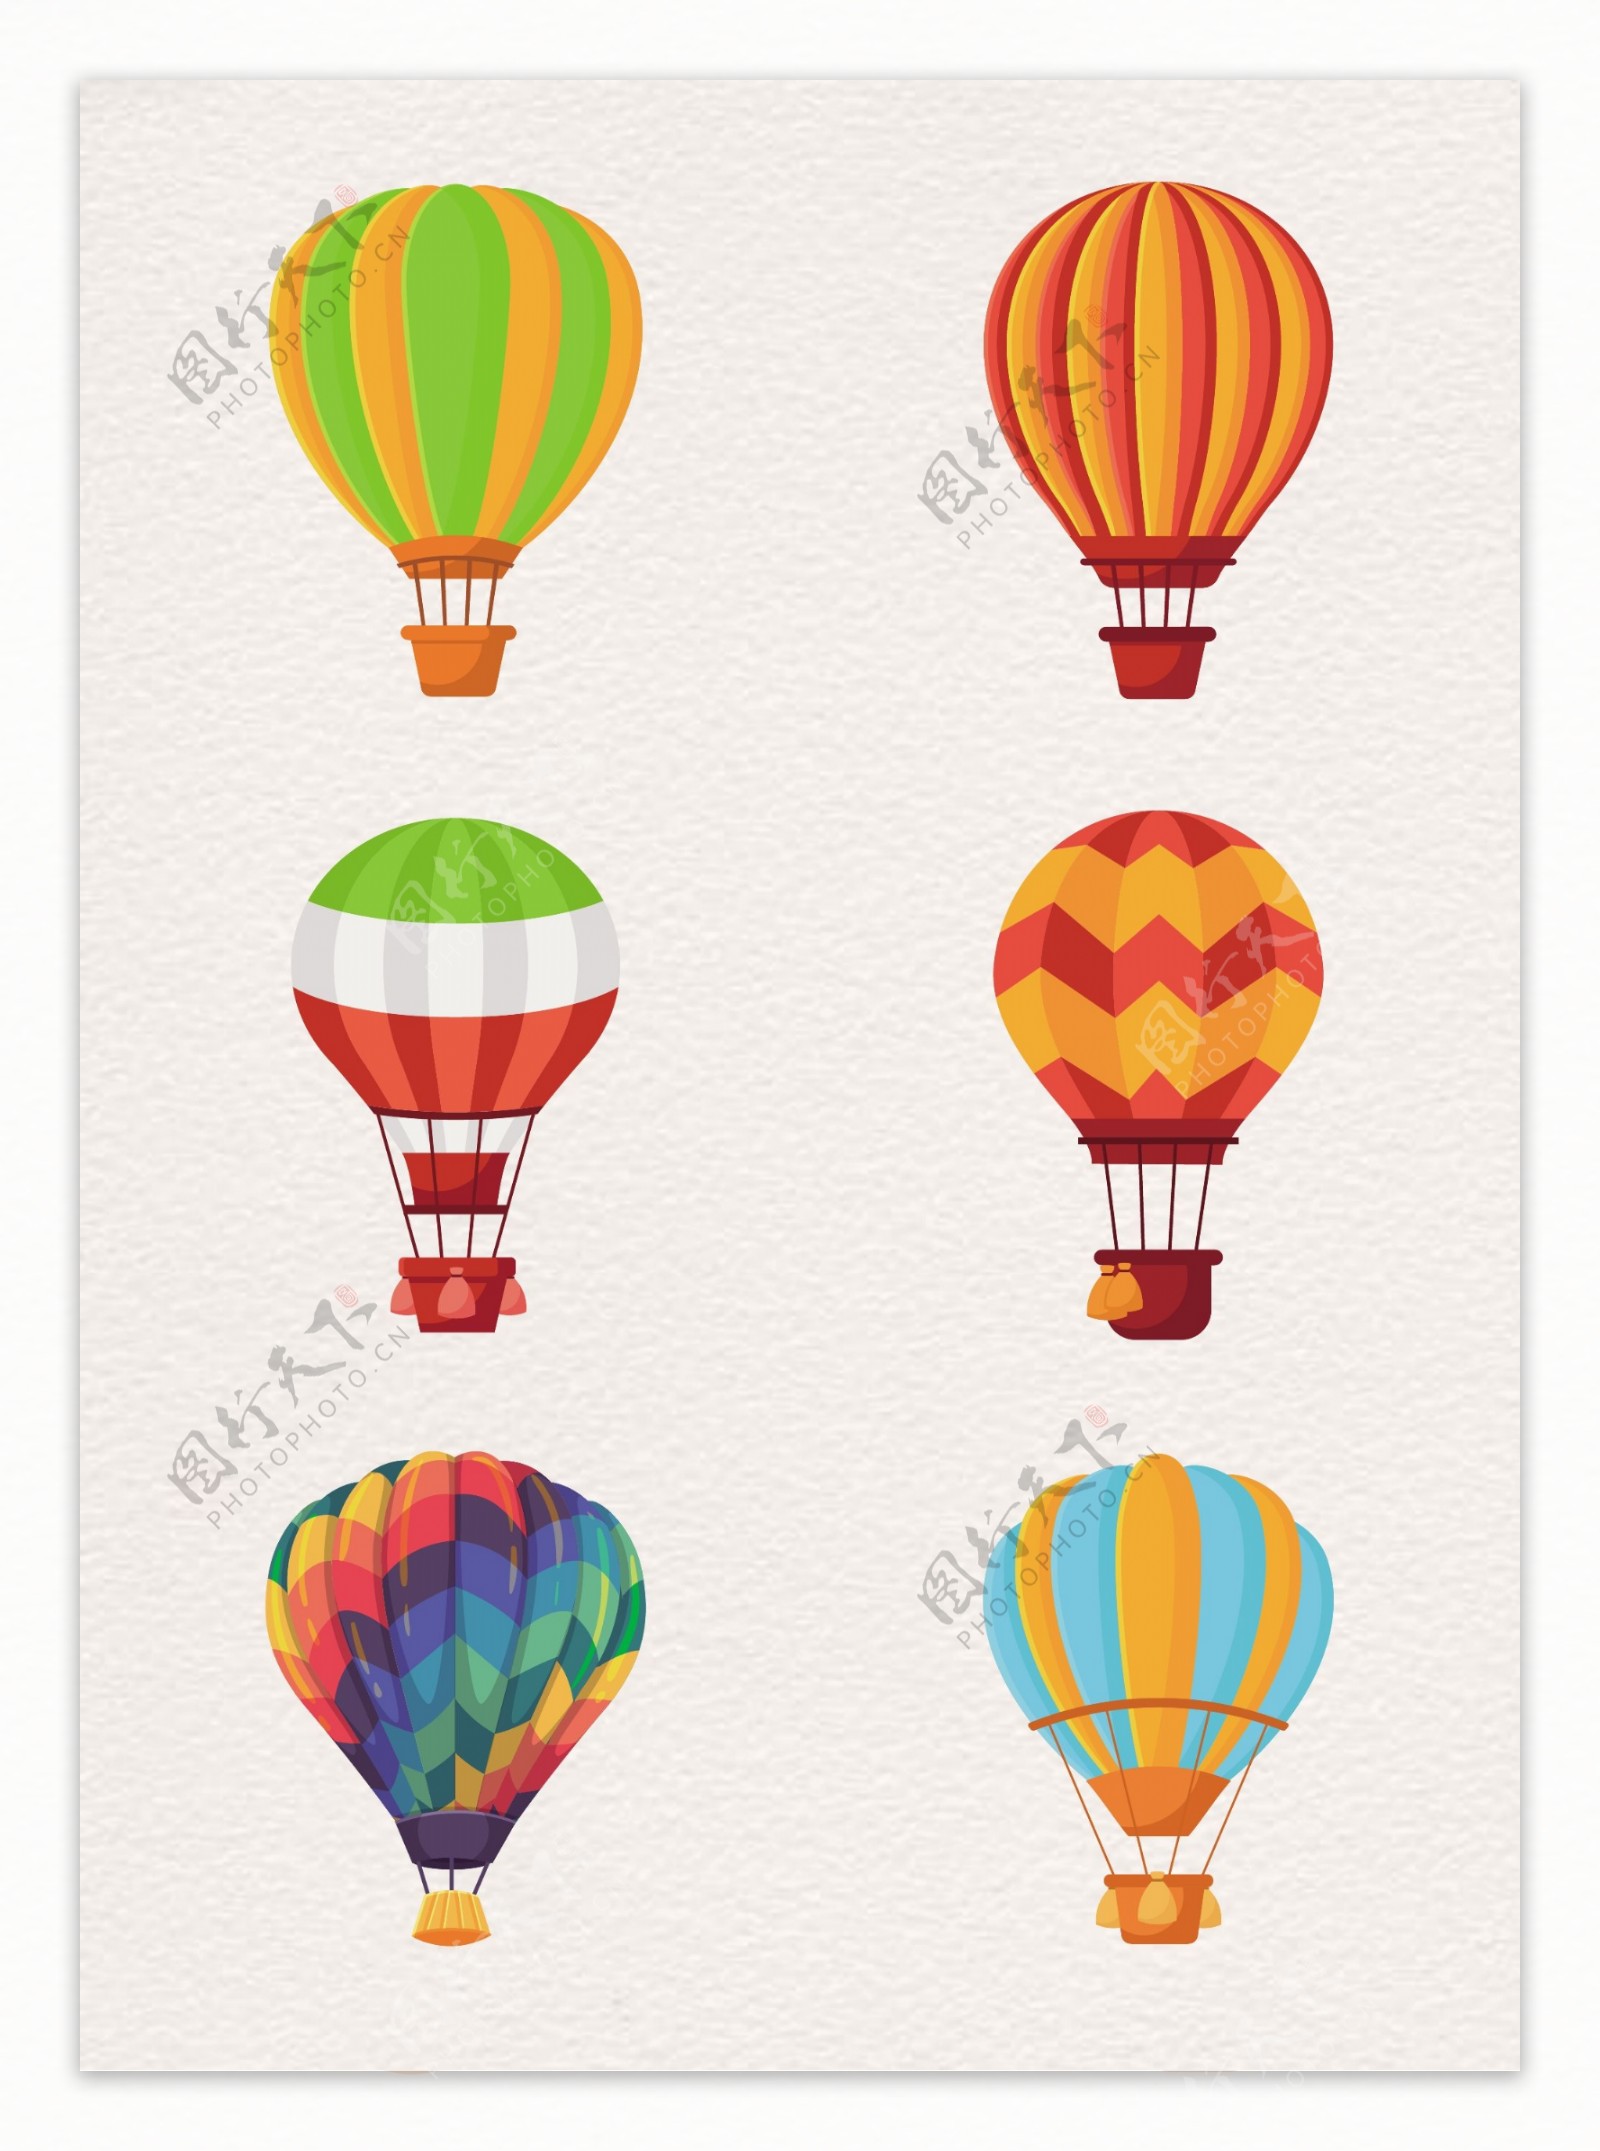 通用节日多彩活动宣传热气球漂浮元素